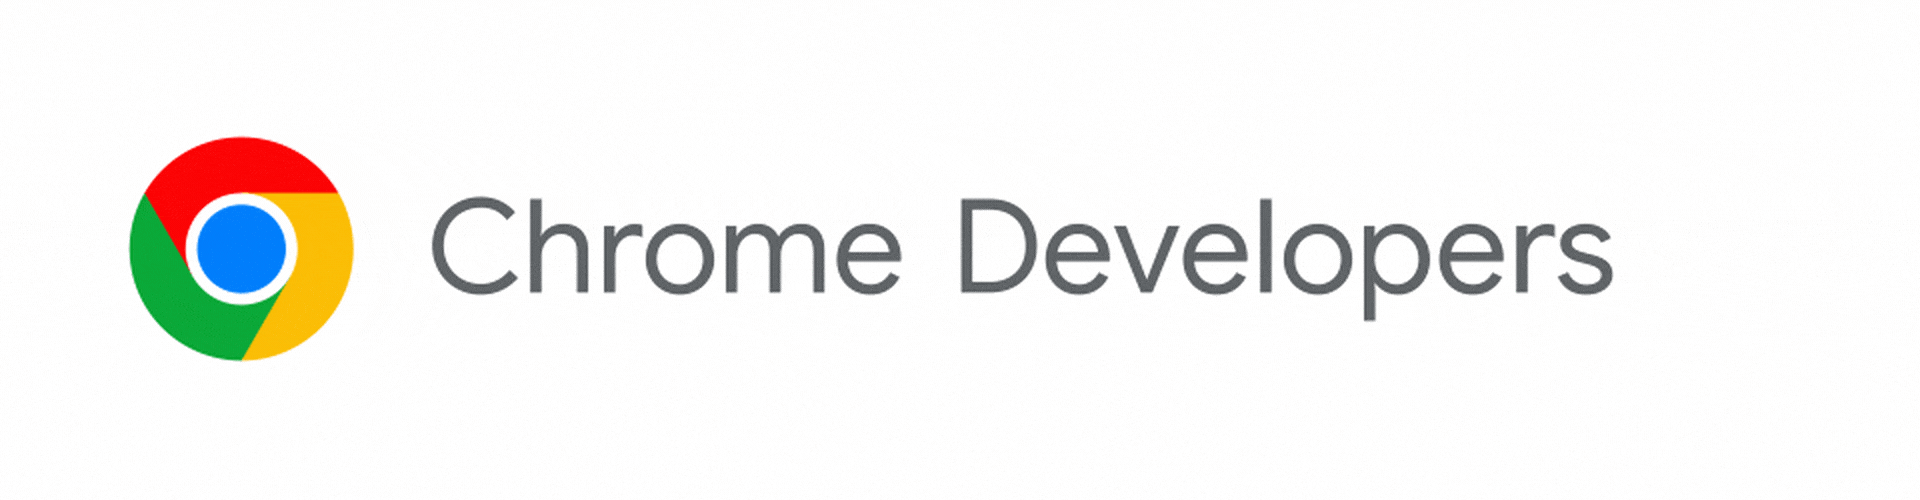 Chrome Developers 標誌轉變為 Chrome for Developers。